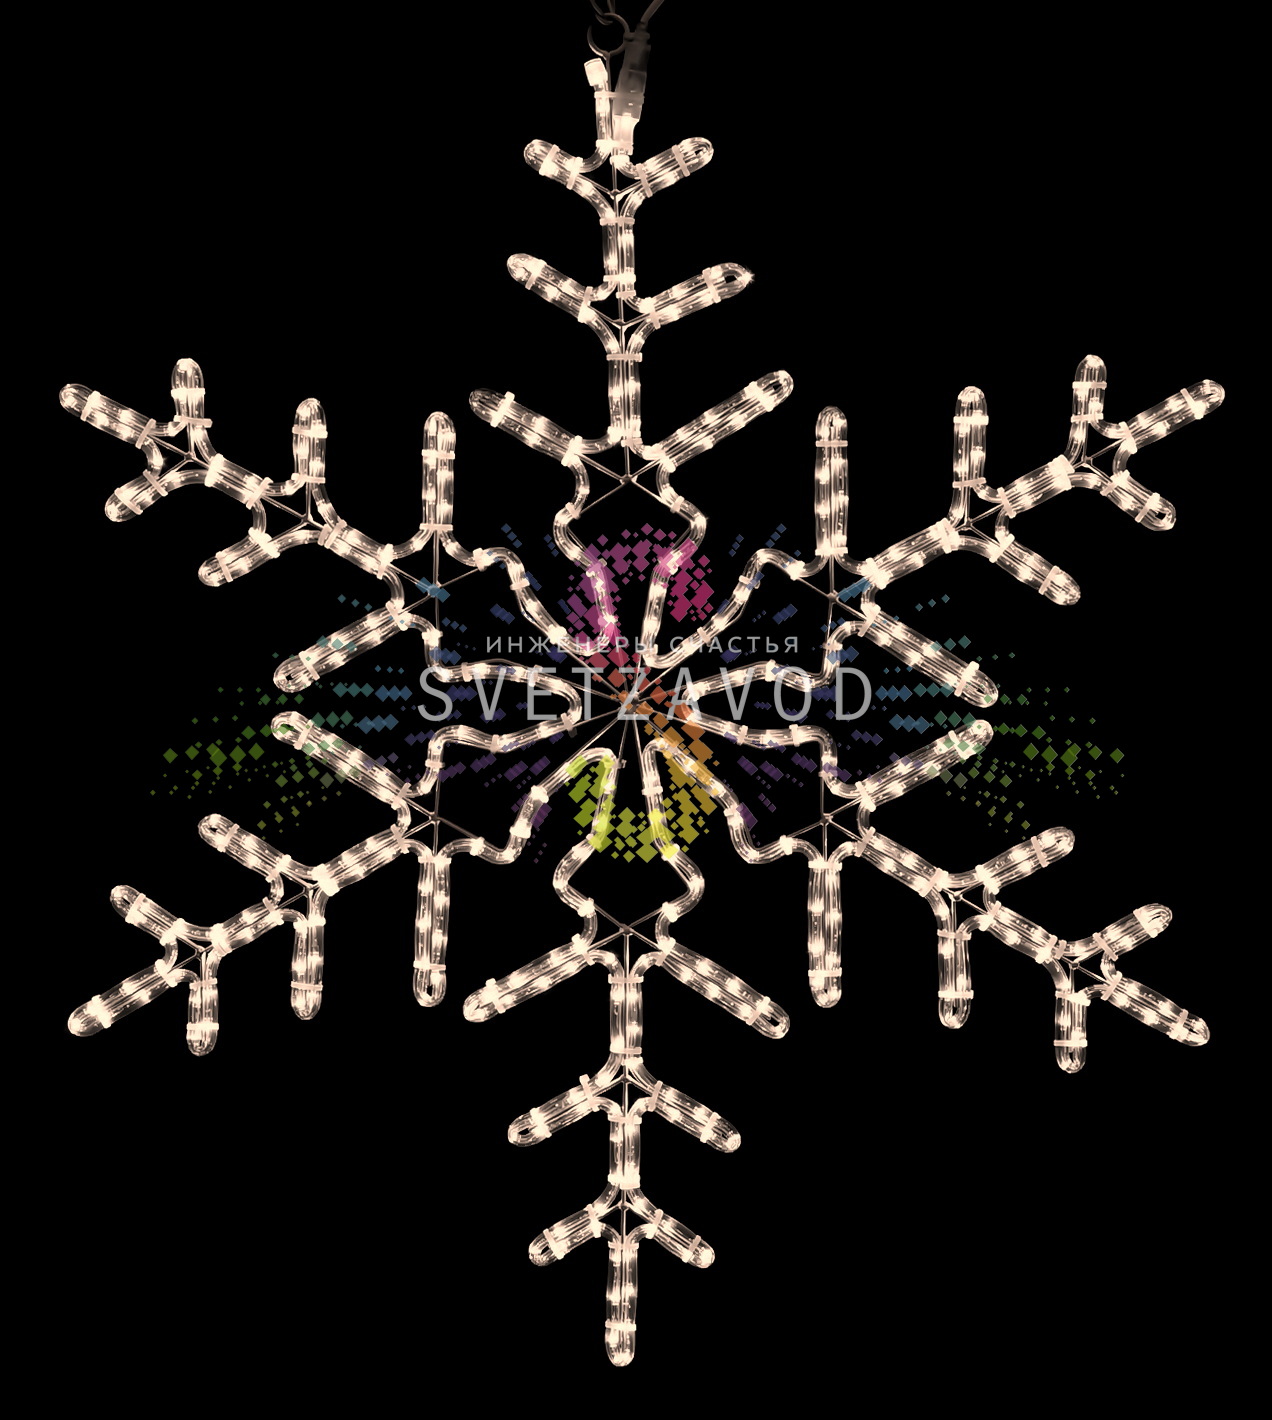 Светодиодная Снежинка, 95см, белая теплая, фиксинг, 220В, IP65